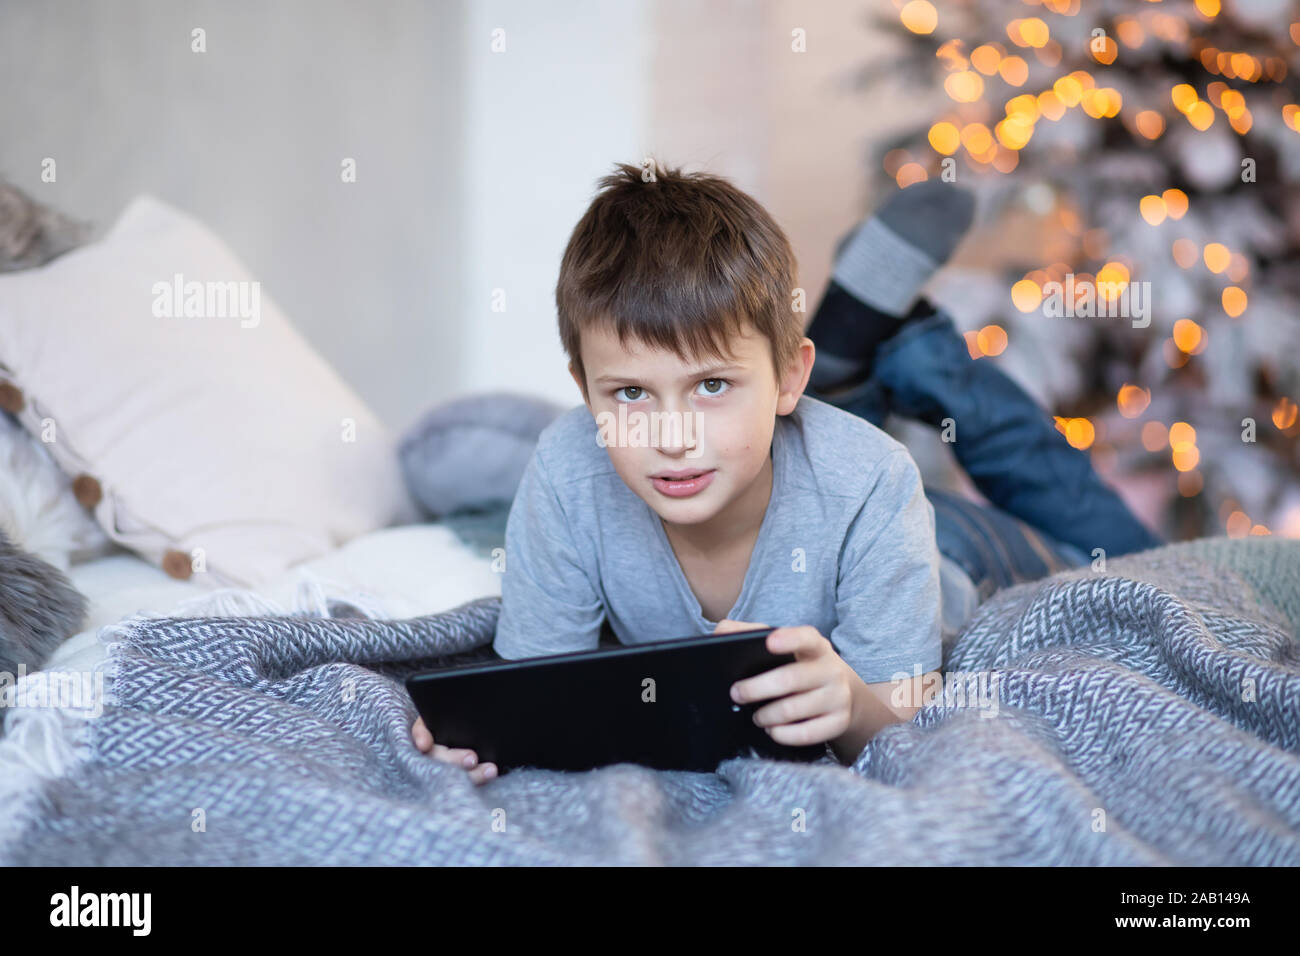 Ernsthafte junge Holding Tablet in Händen. Kind spielt Computerspiele auf Tablet. Junge liegt auf dem Bett gegenüber Weihnachtsbaum vor Weihnachten. Schwarzer Freitag und Stockfoto